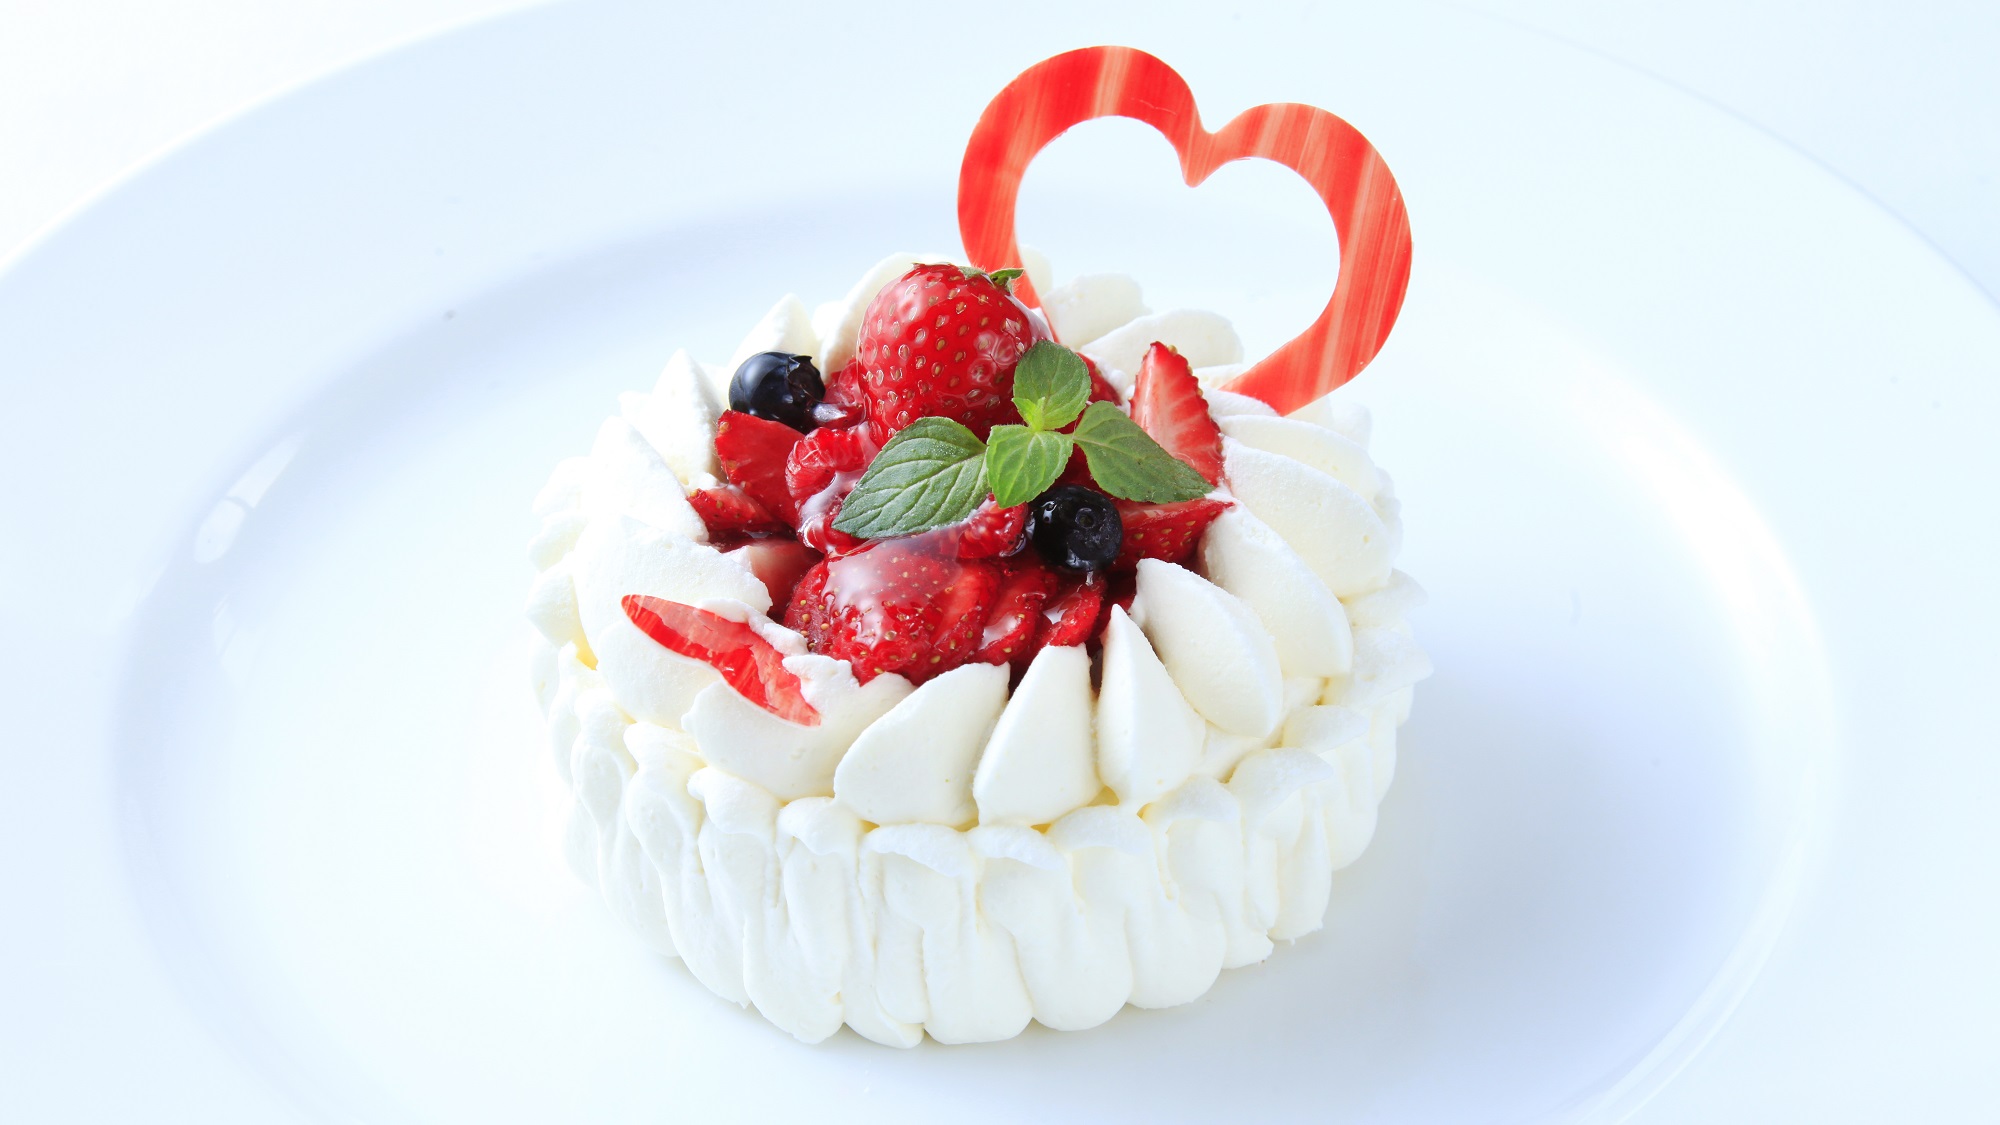 【Anniversary】ホールケーキで特別な日をお祝い